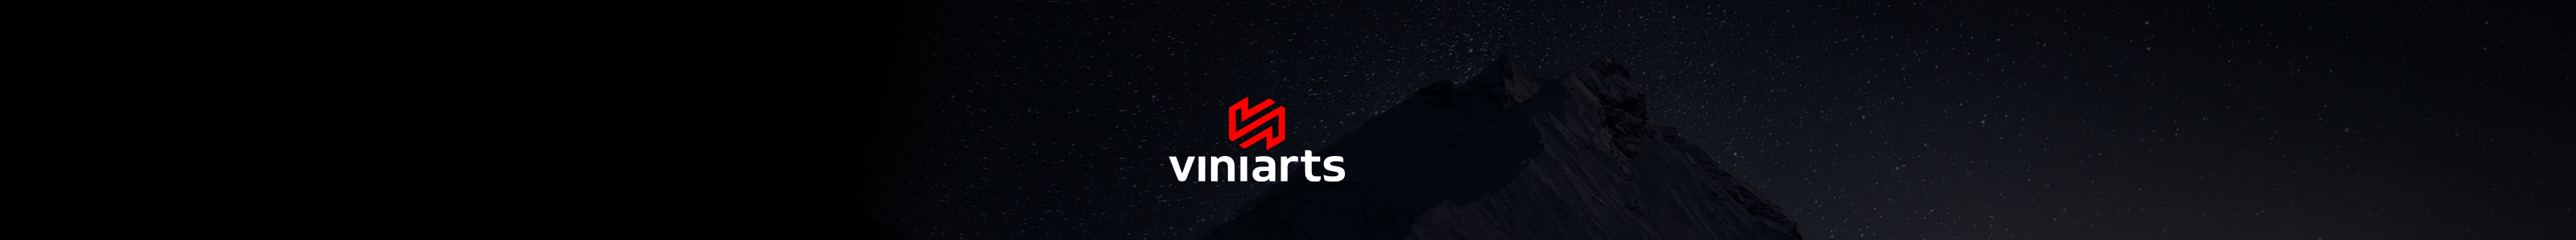 Vinícius Arts's profile banner